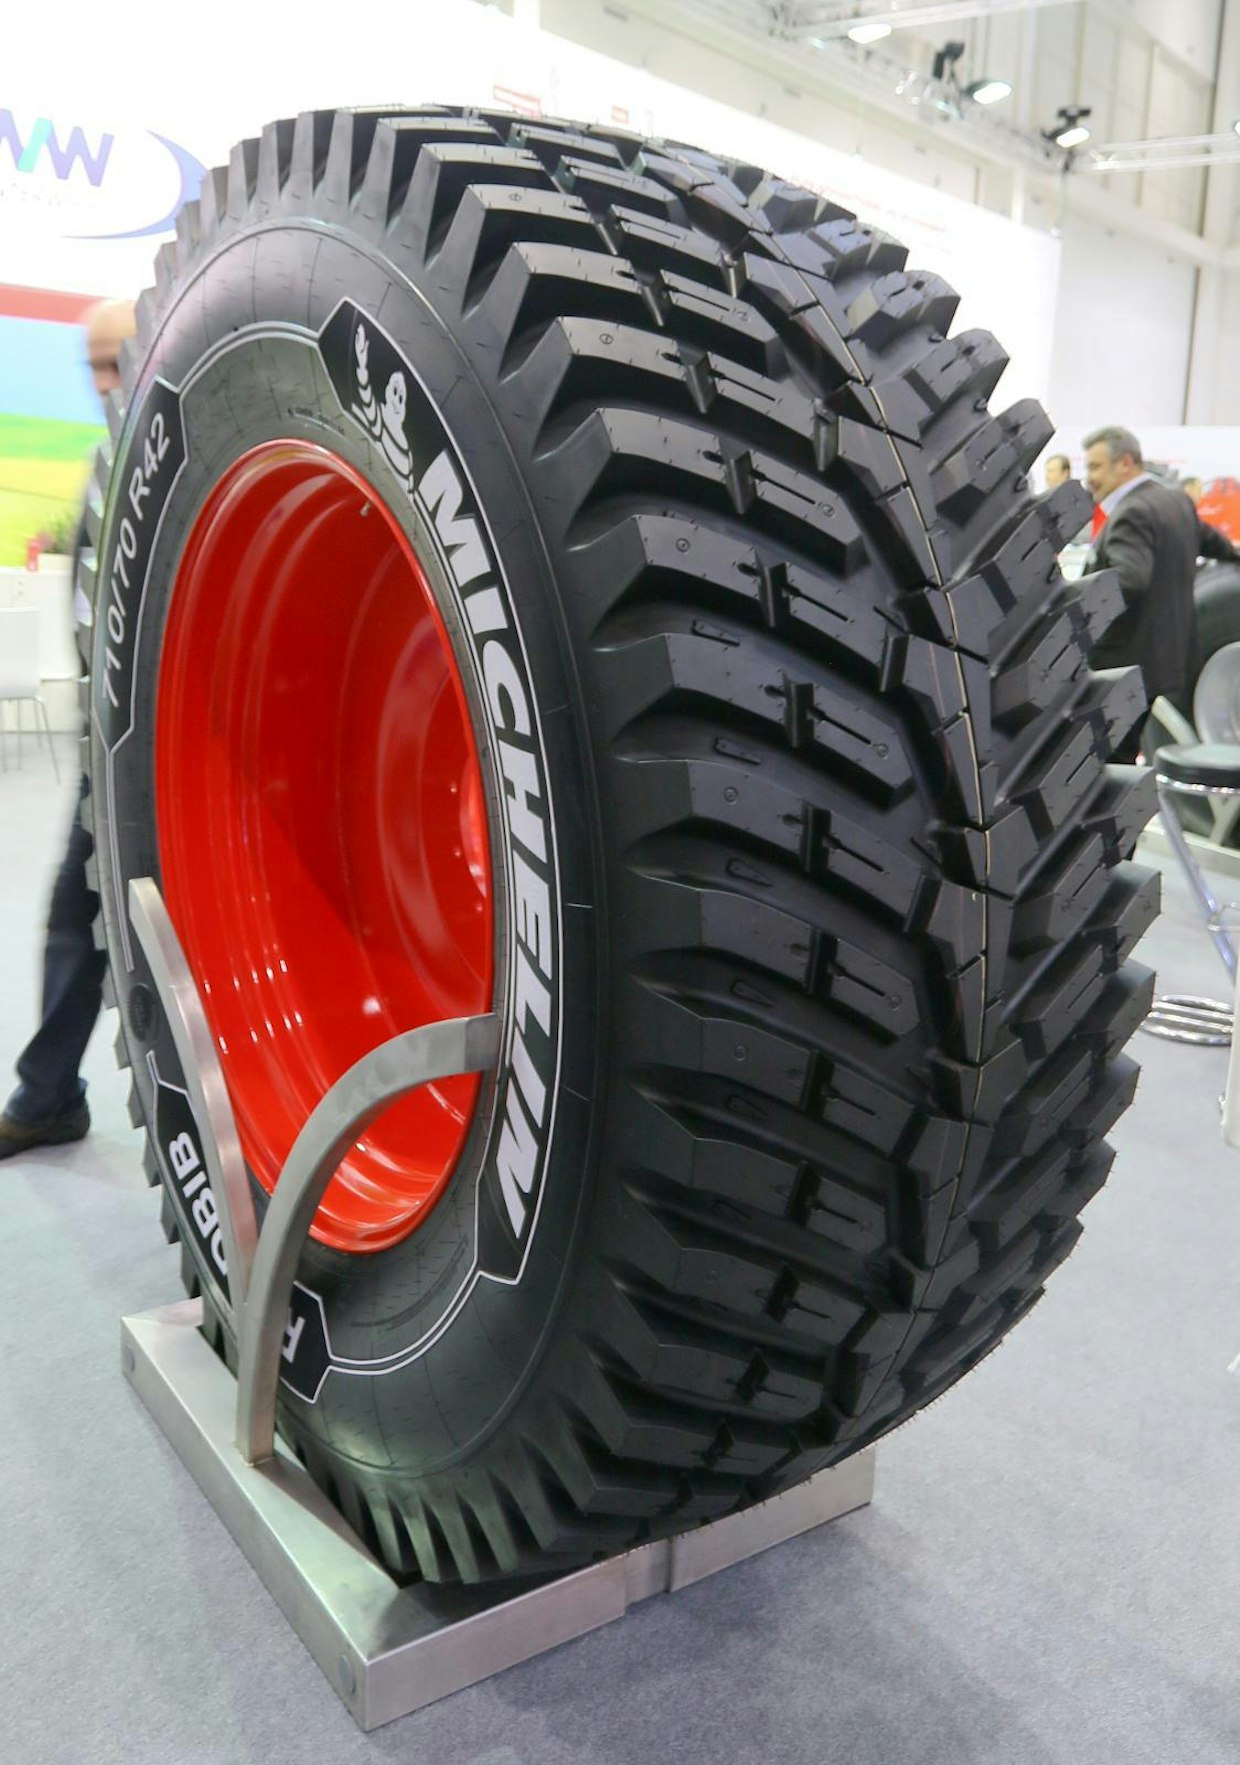 Michelin on muiden valmistajien tavoin panostamassa traktoreiden tiekäyttöön suunnattuihin renkaisiin. Roadbib-renkaassa on normaaliin nähden 60 prosenttia enemmän maahan koskettavaa kulutuspintaa, mikä lisää valmistajan mukaan käyttöikää 25 prosenttia. (TH)